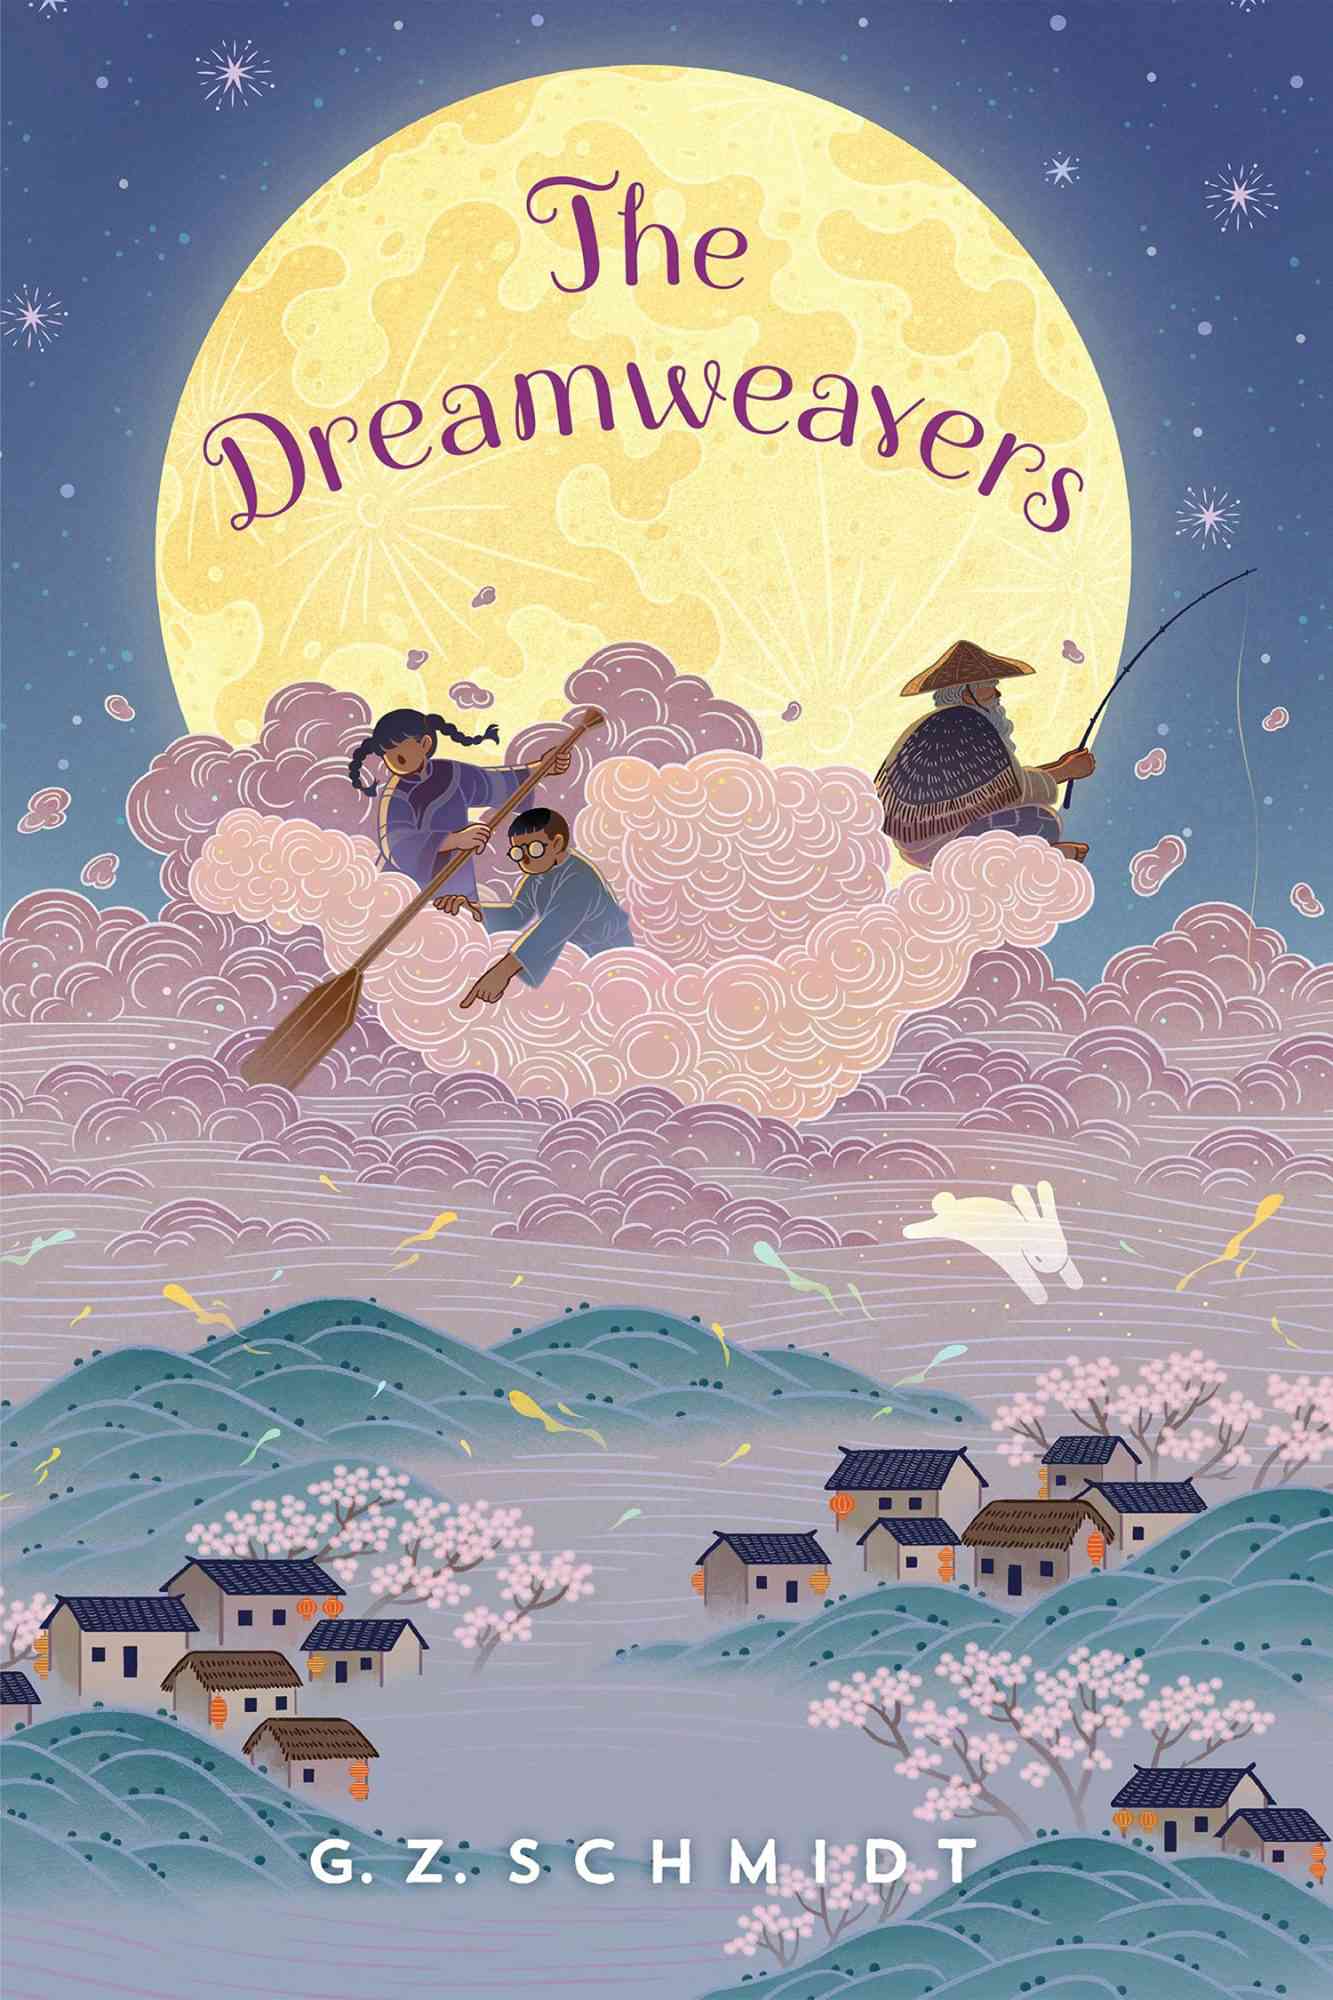 The Dreamweavers by G. Z. Schmidt